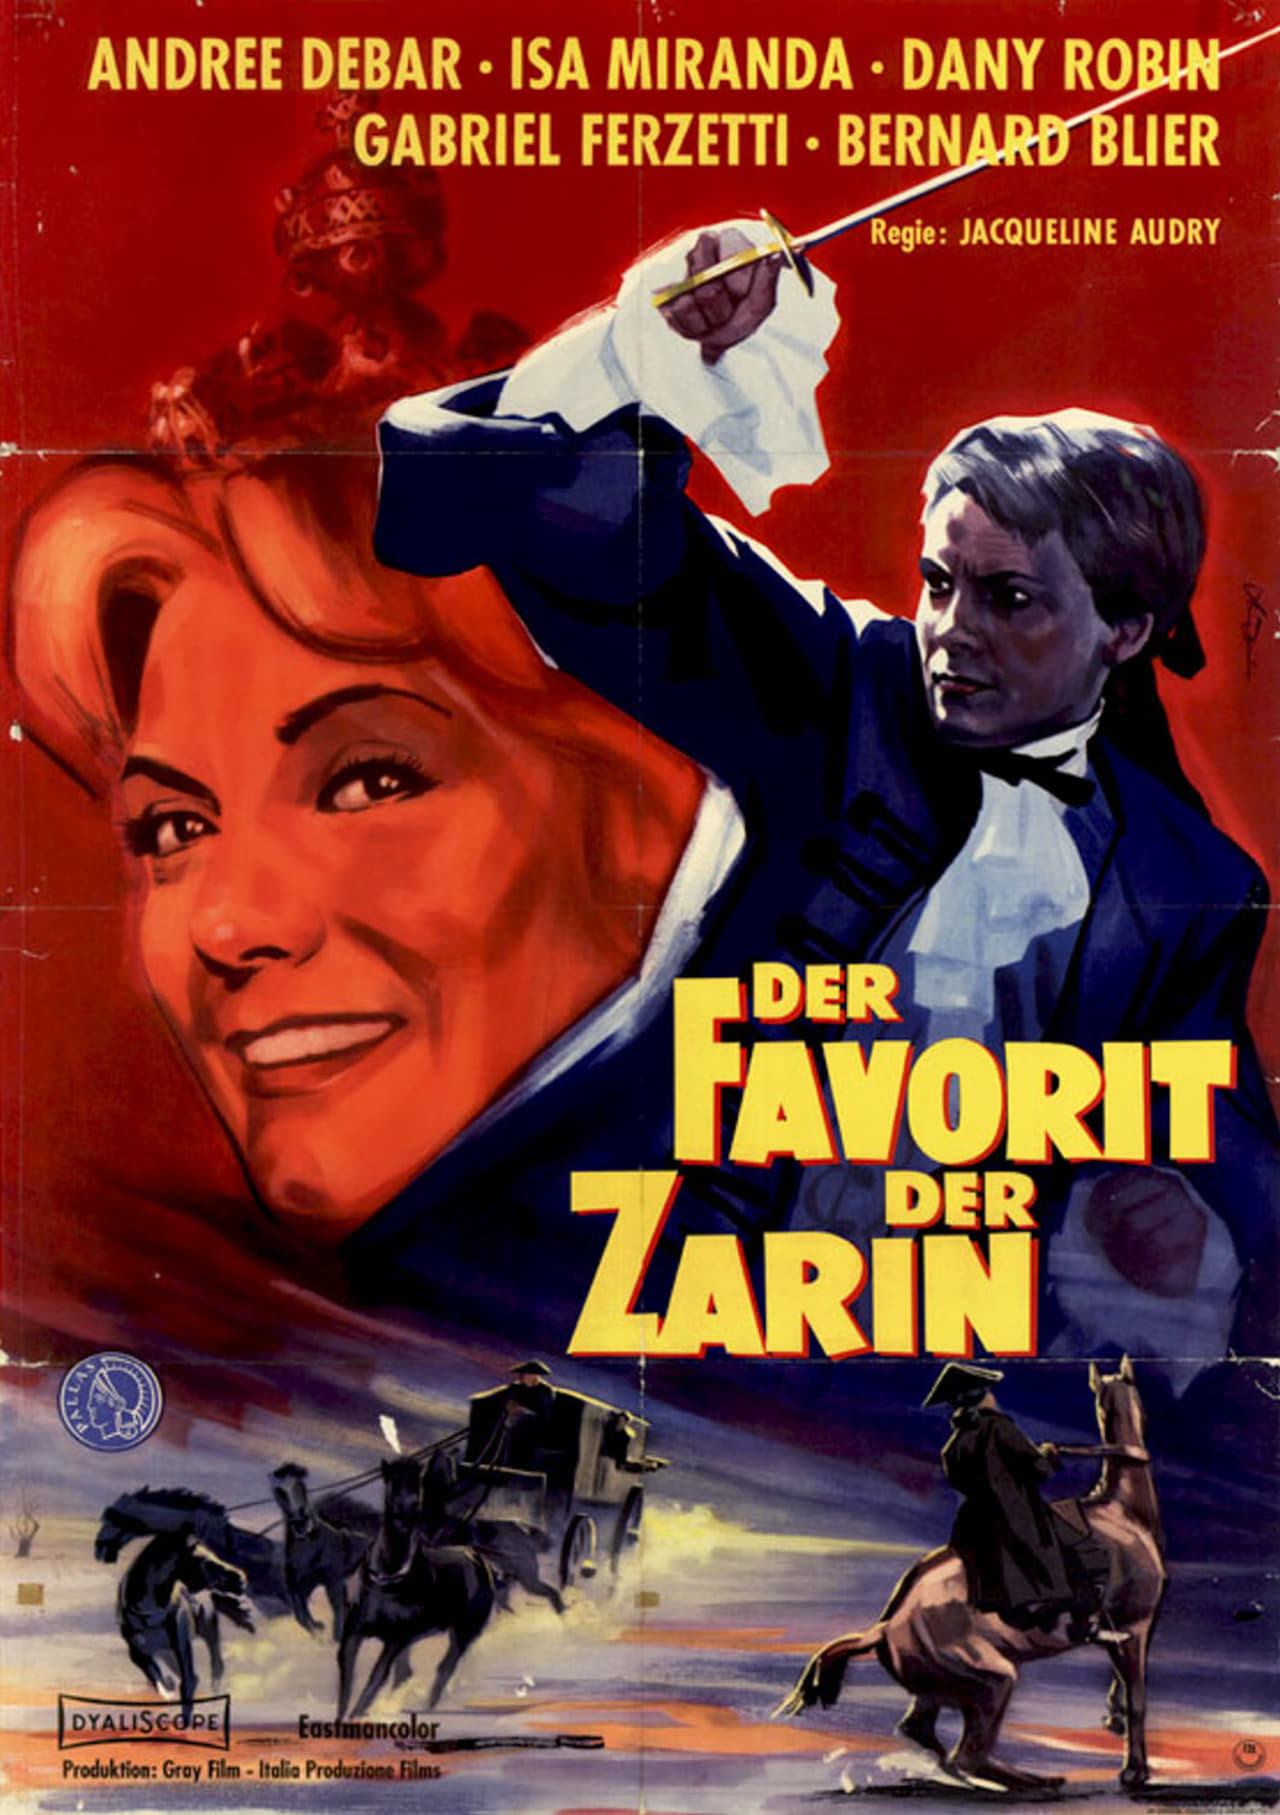 Storie d'amore proibite (Il cavaliere e la zarina) (1959)